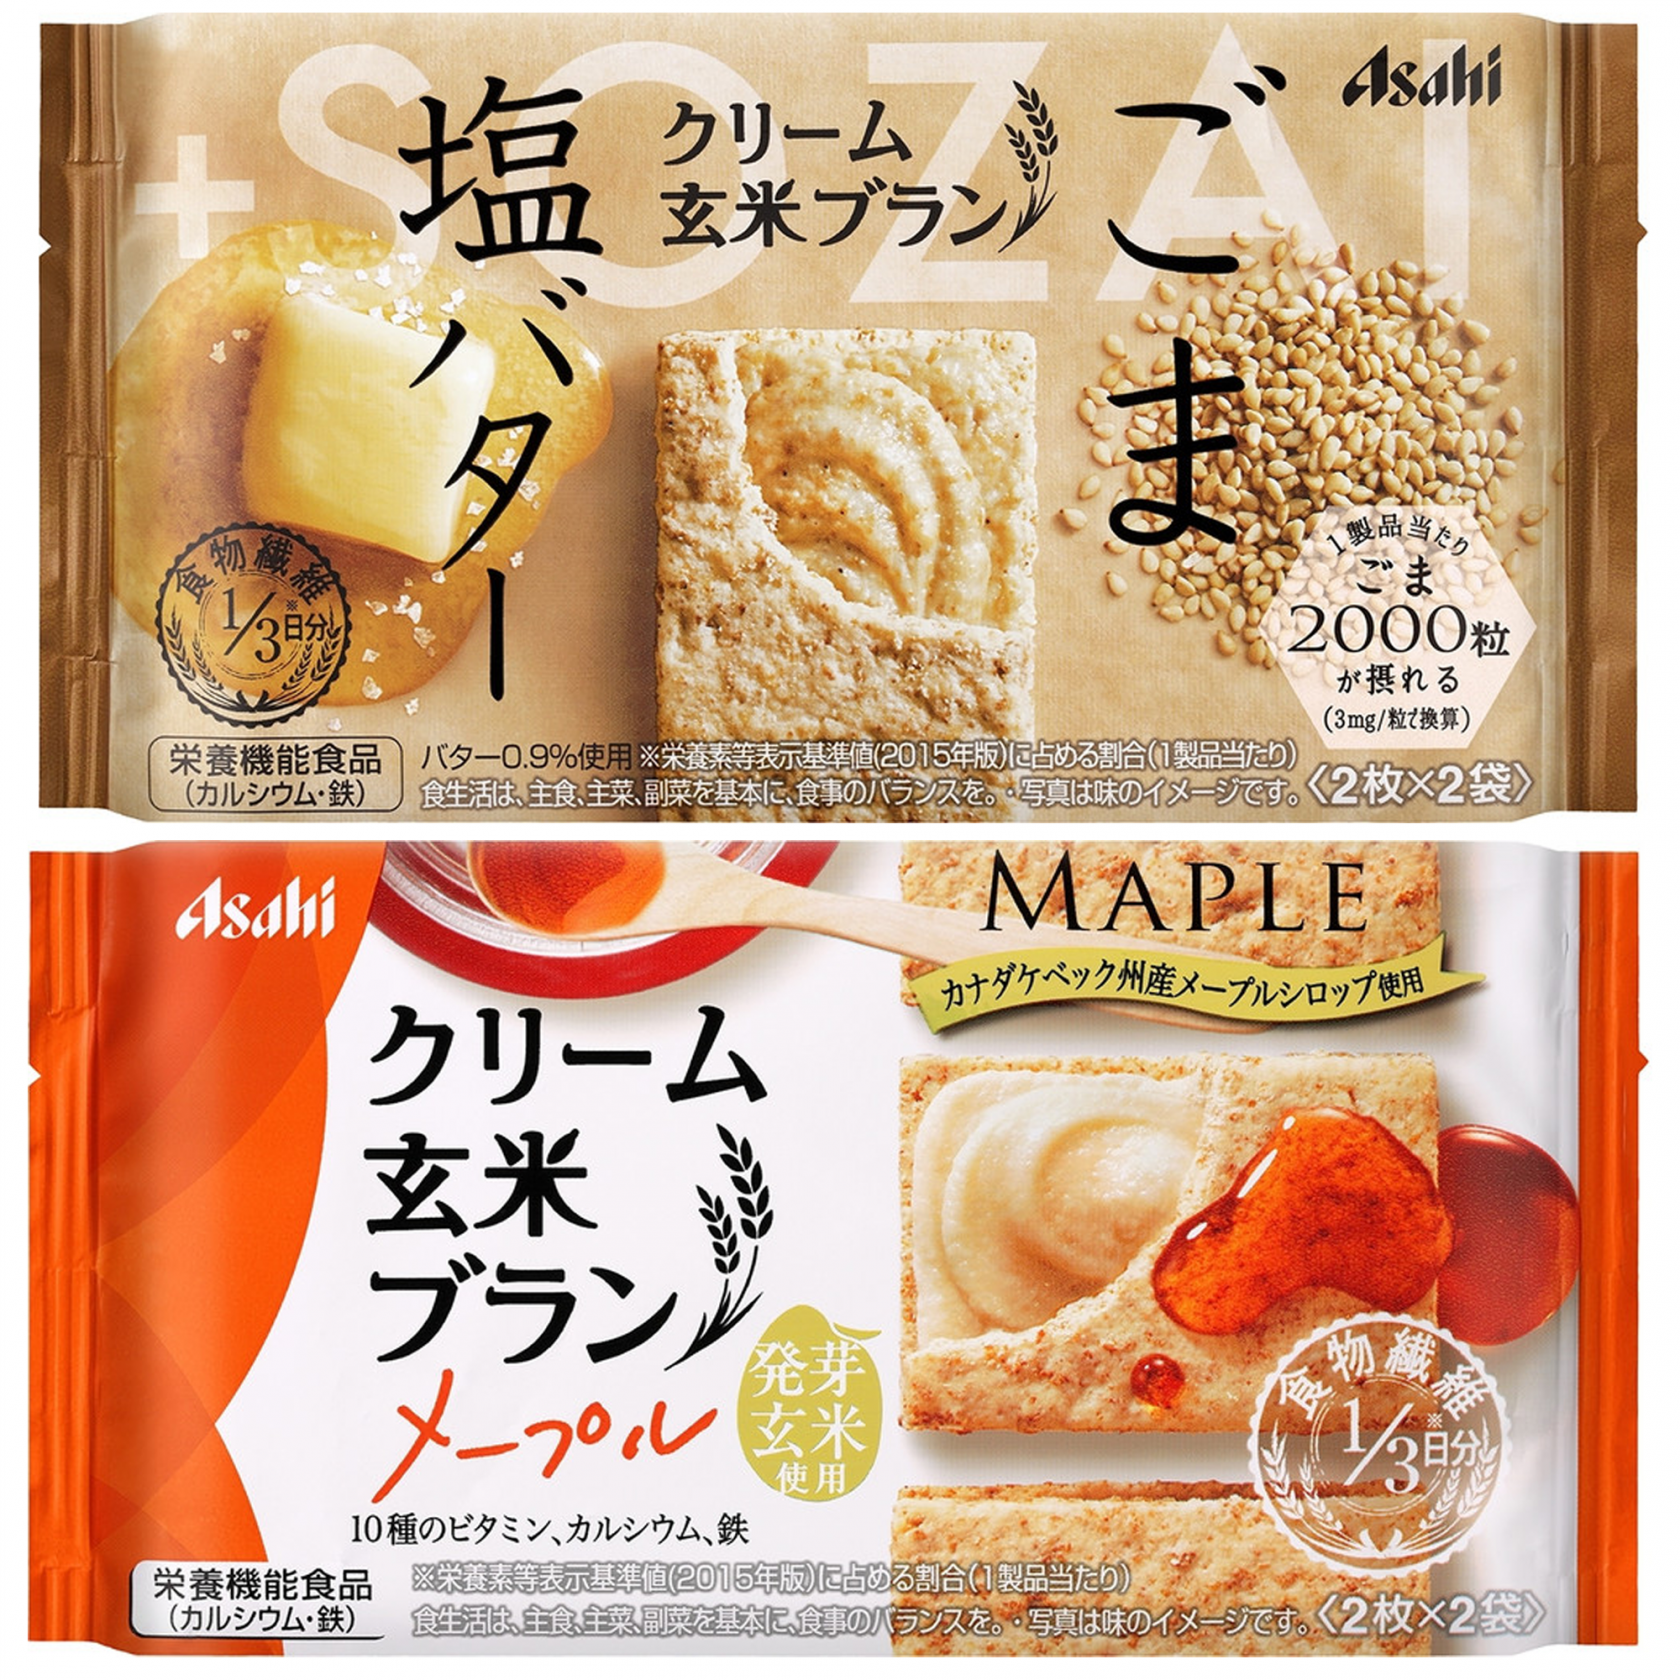 アサヒ クリーム玄米ブラン メープル ごま 塩バター 新発売 19年8月16日 エキサイトニュース